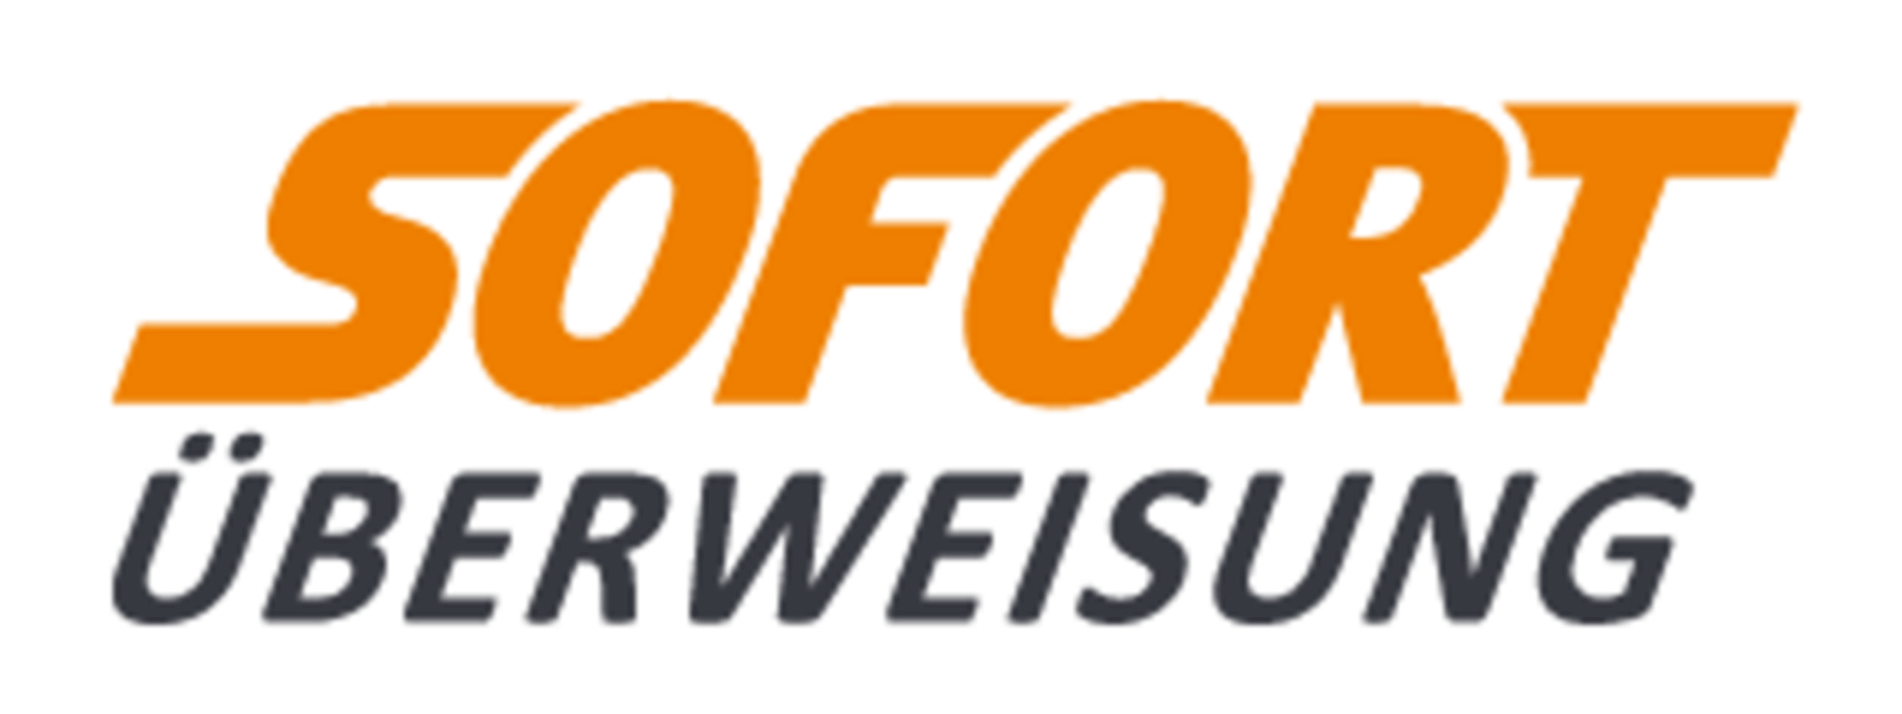 SOFORT logo